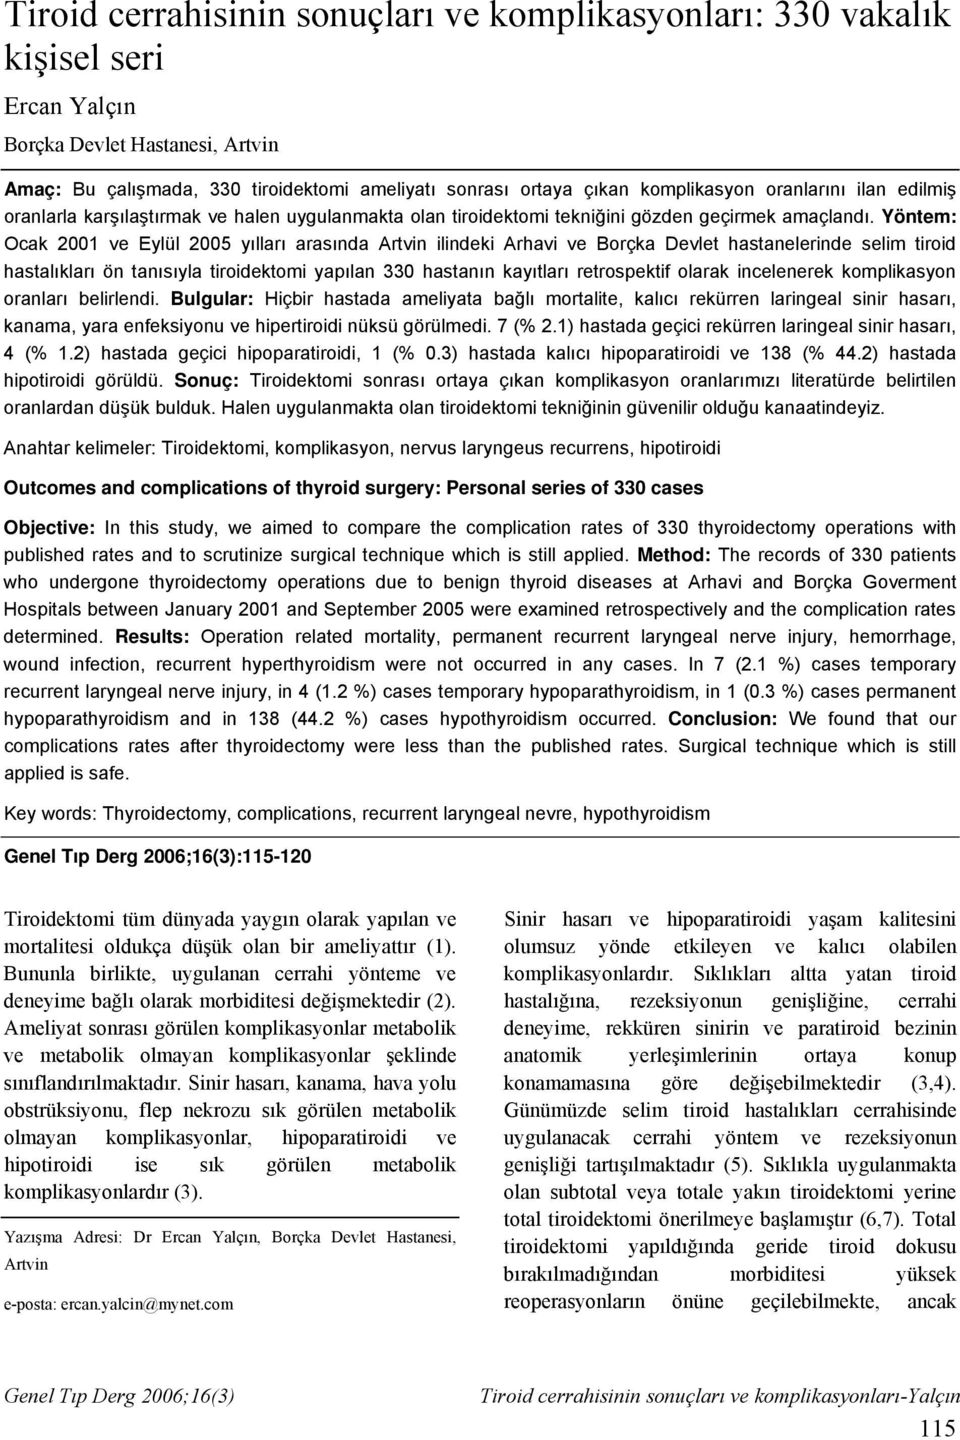 Yöntem: Ocak 2001 ve Eylül 2005 yılları arasında Artvin ilindeki Arhavi ve Borçka Devlet hastanelerinde selim tiroid hastalıkları ön tanısıyla yapılan 330 hastanın kayıtları retrospektif olarak